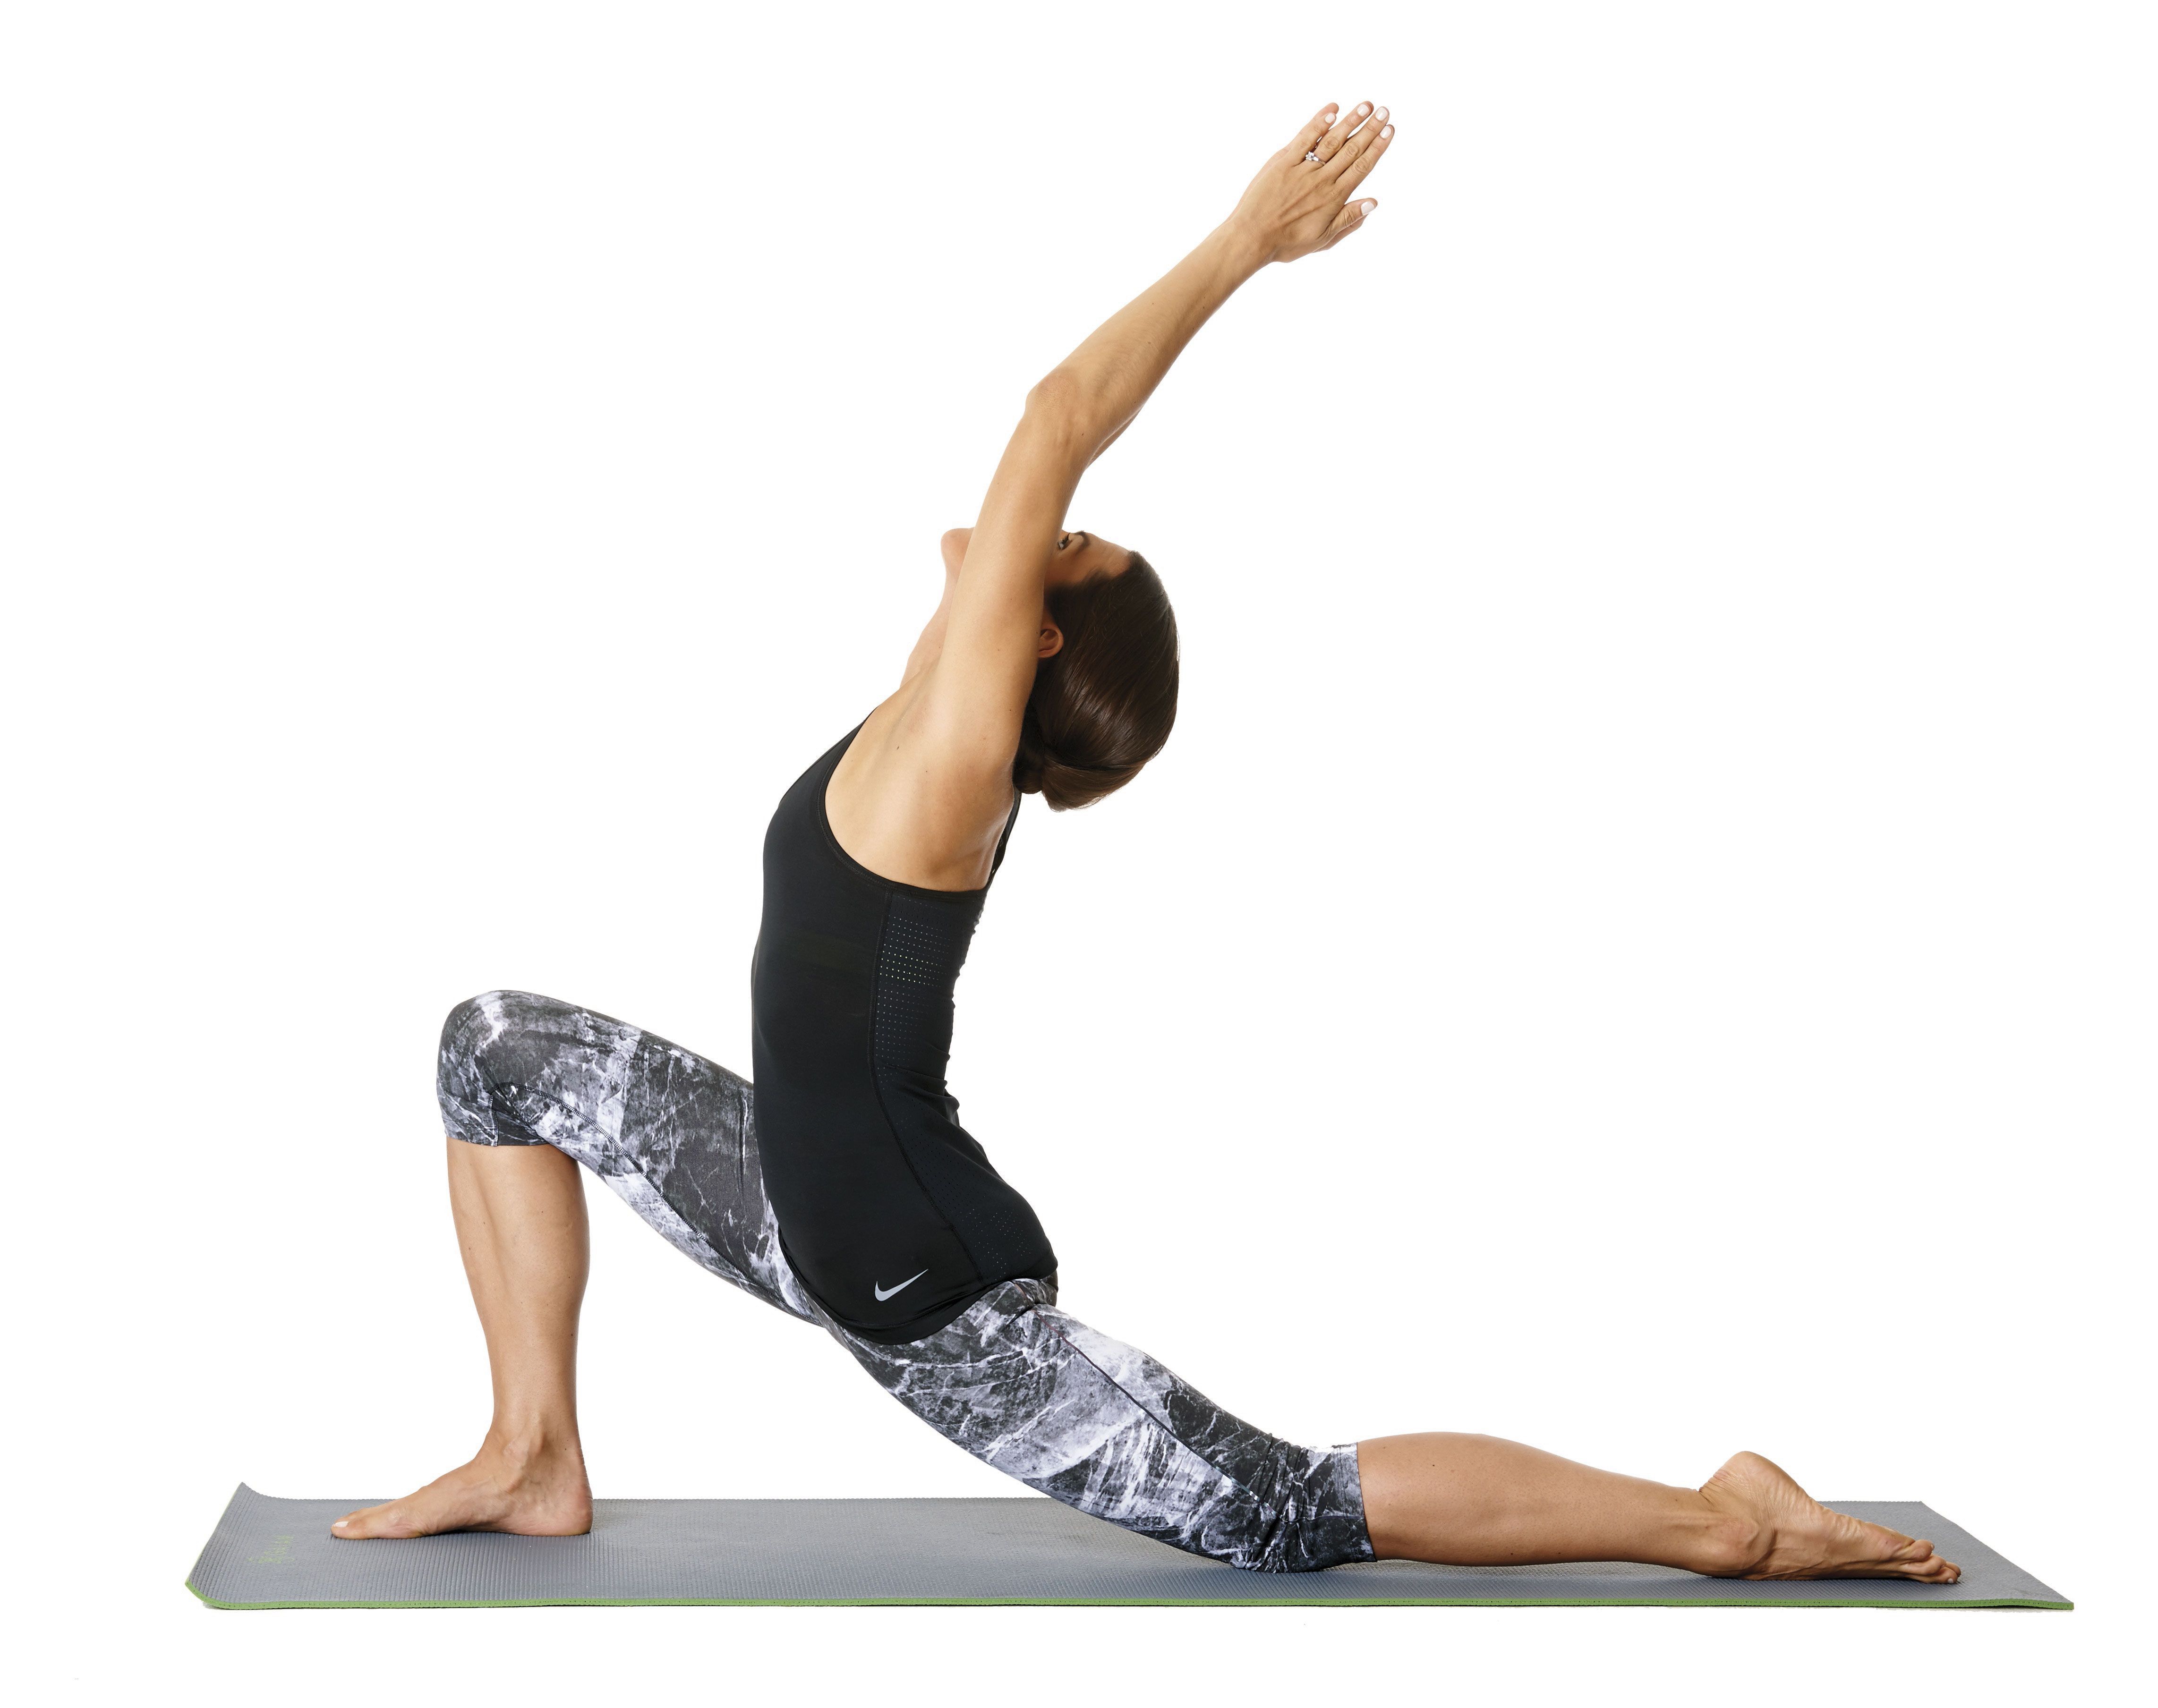 Why we practice the Warrior poses - Ekhart Yoga